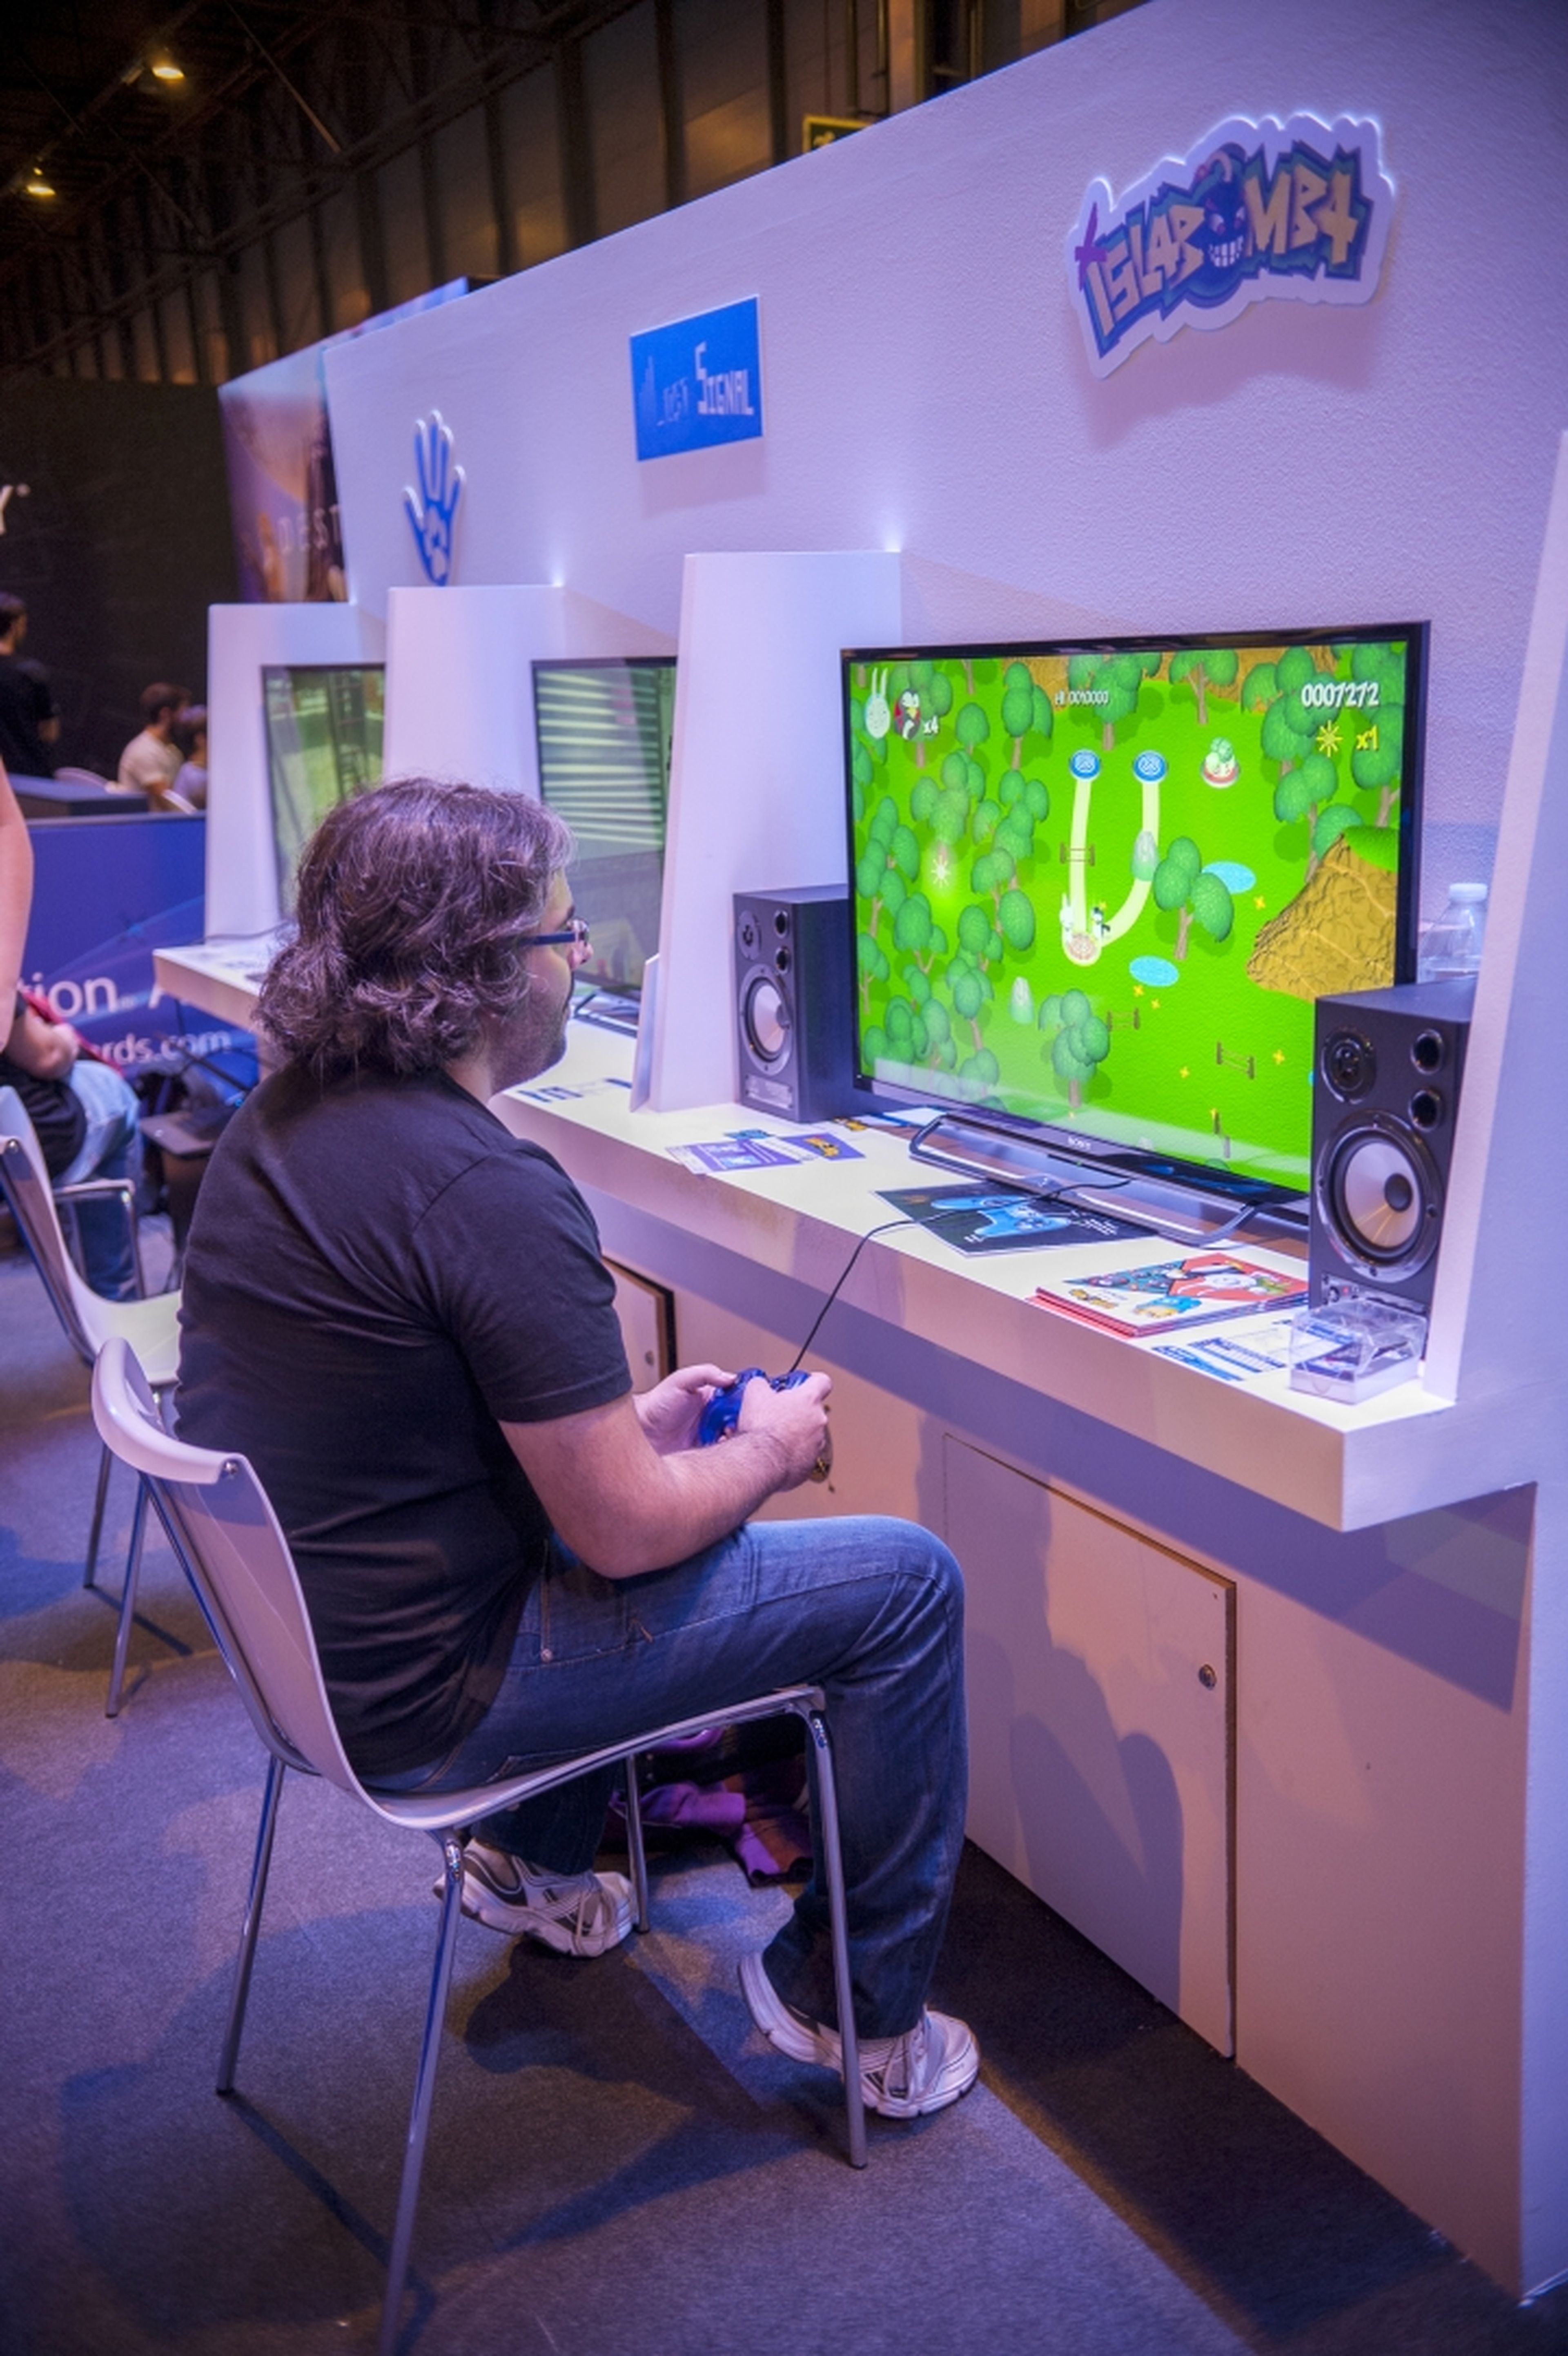 Madrid Games Week 2014: los proyectos de PlayStation Awards